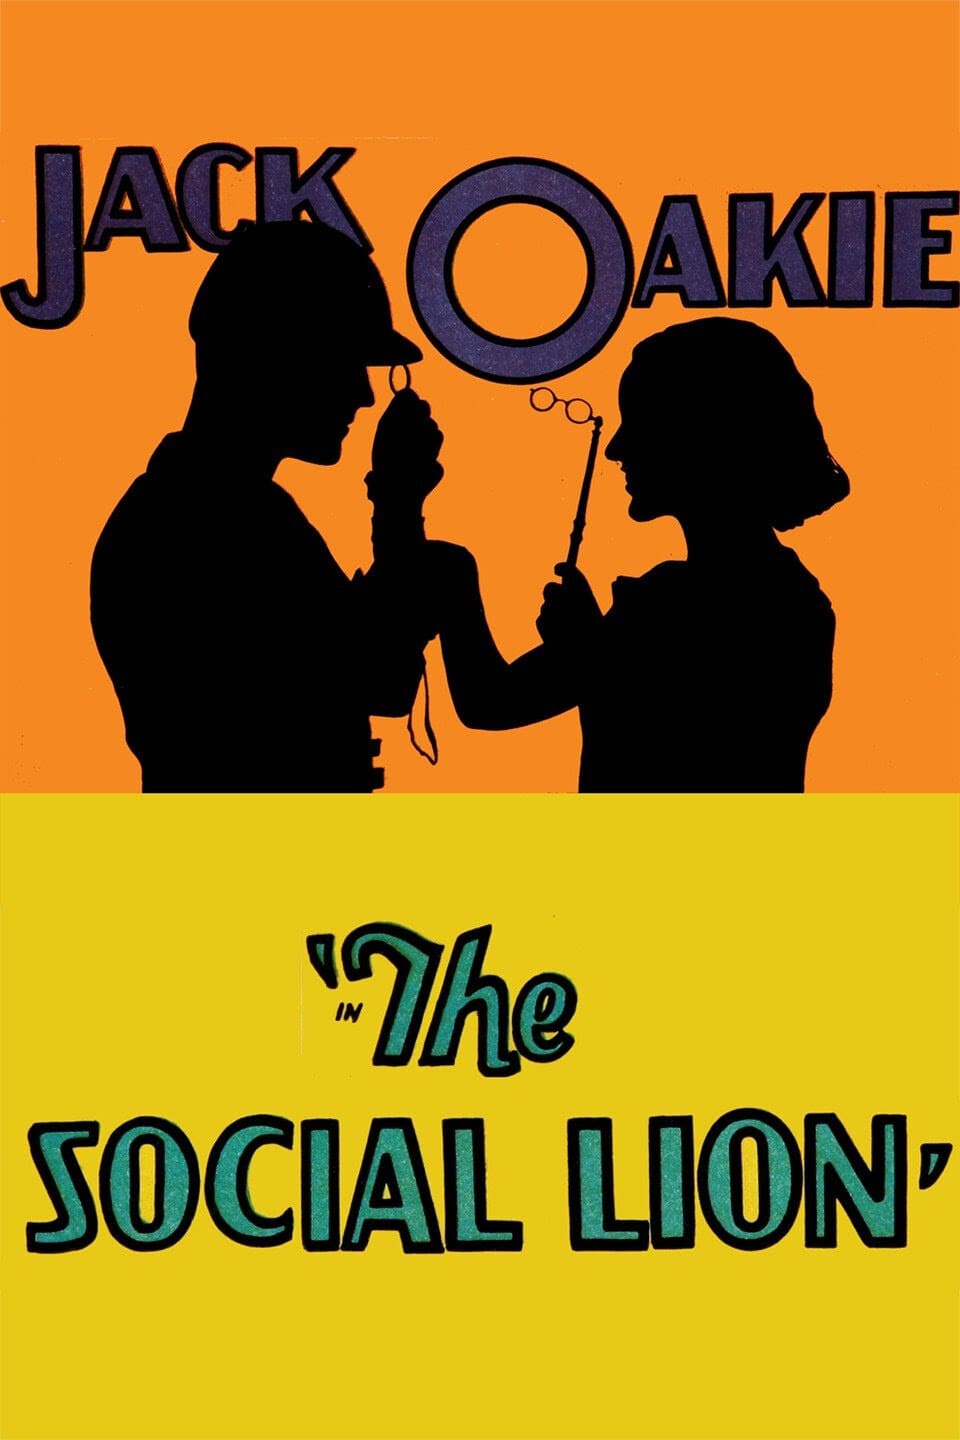 The Social Lion (1930)